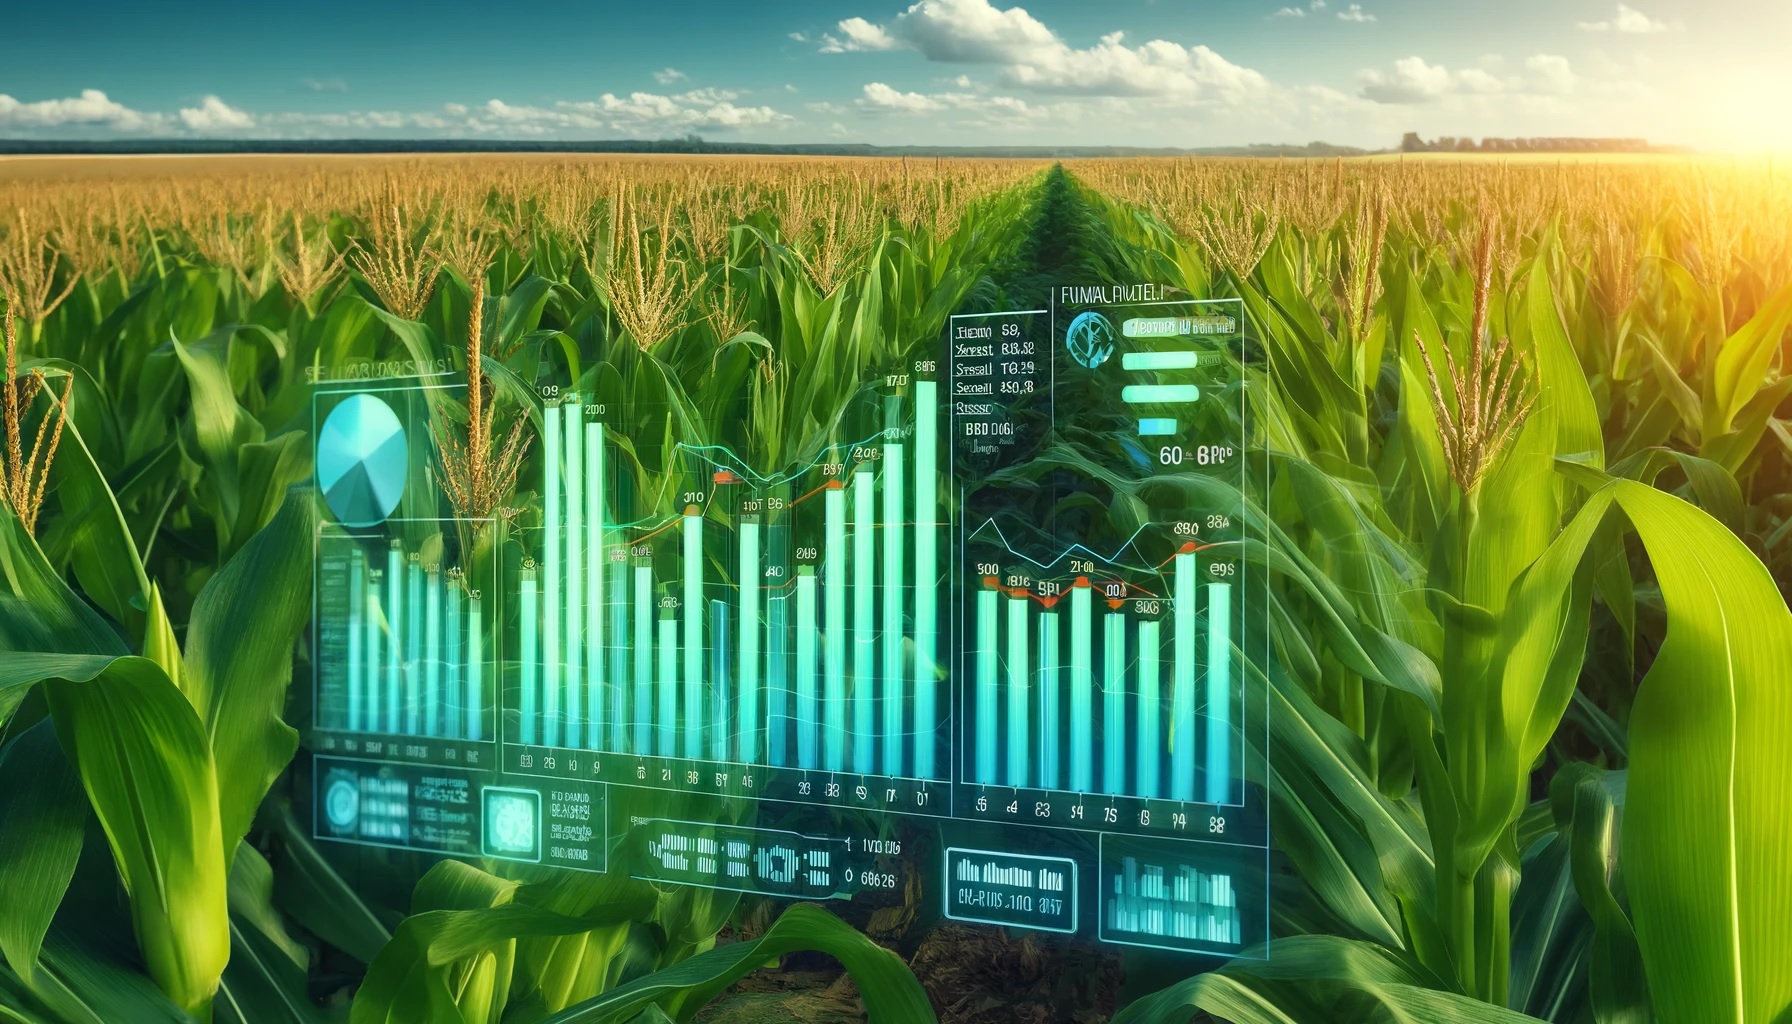 Maisfeld mit überlagerten digitalen Diagrammen, die aktuelle Marktentwicklungen und Preisanalysen im Agrarrohstoffmarkt darstellen.